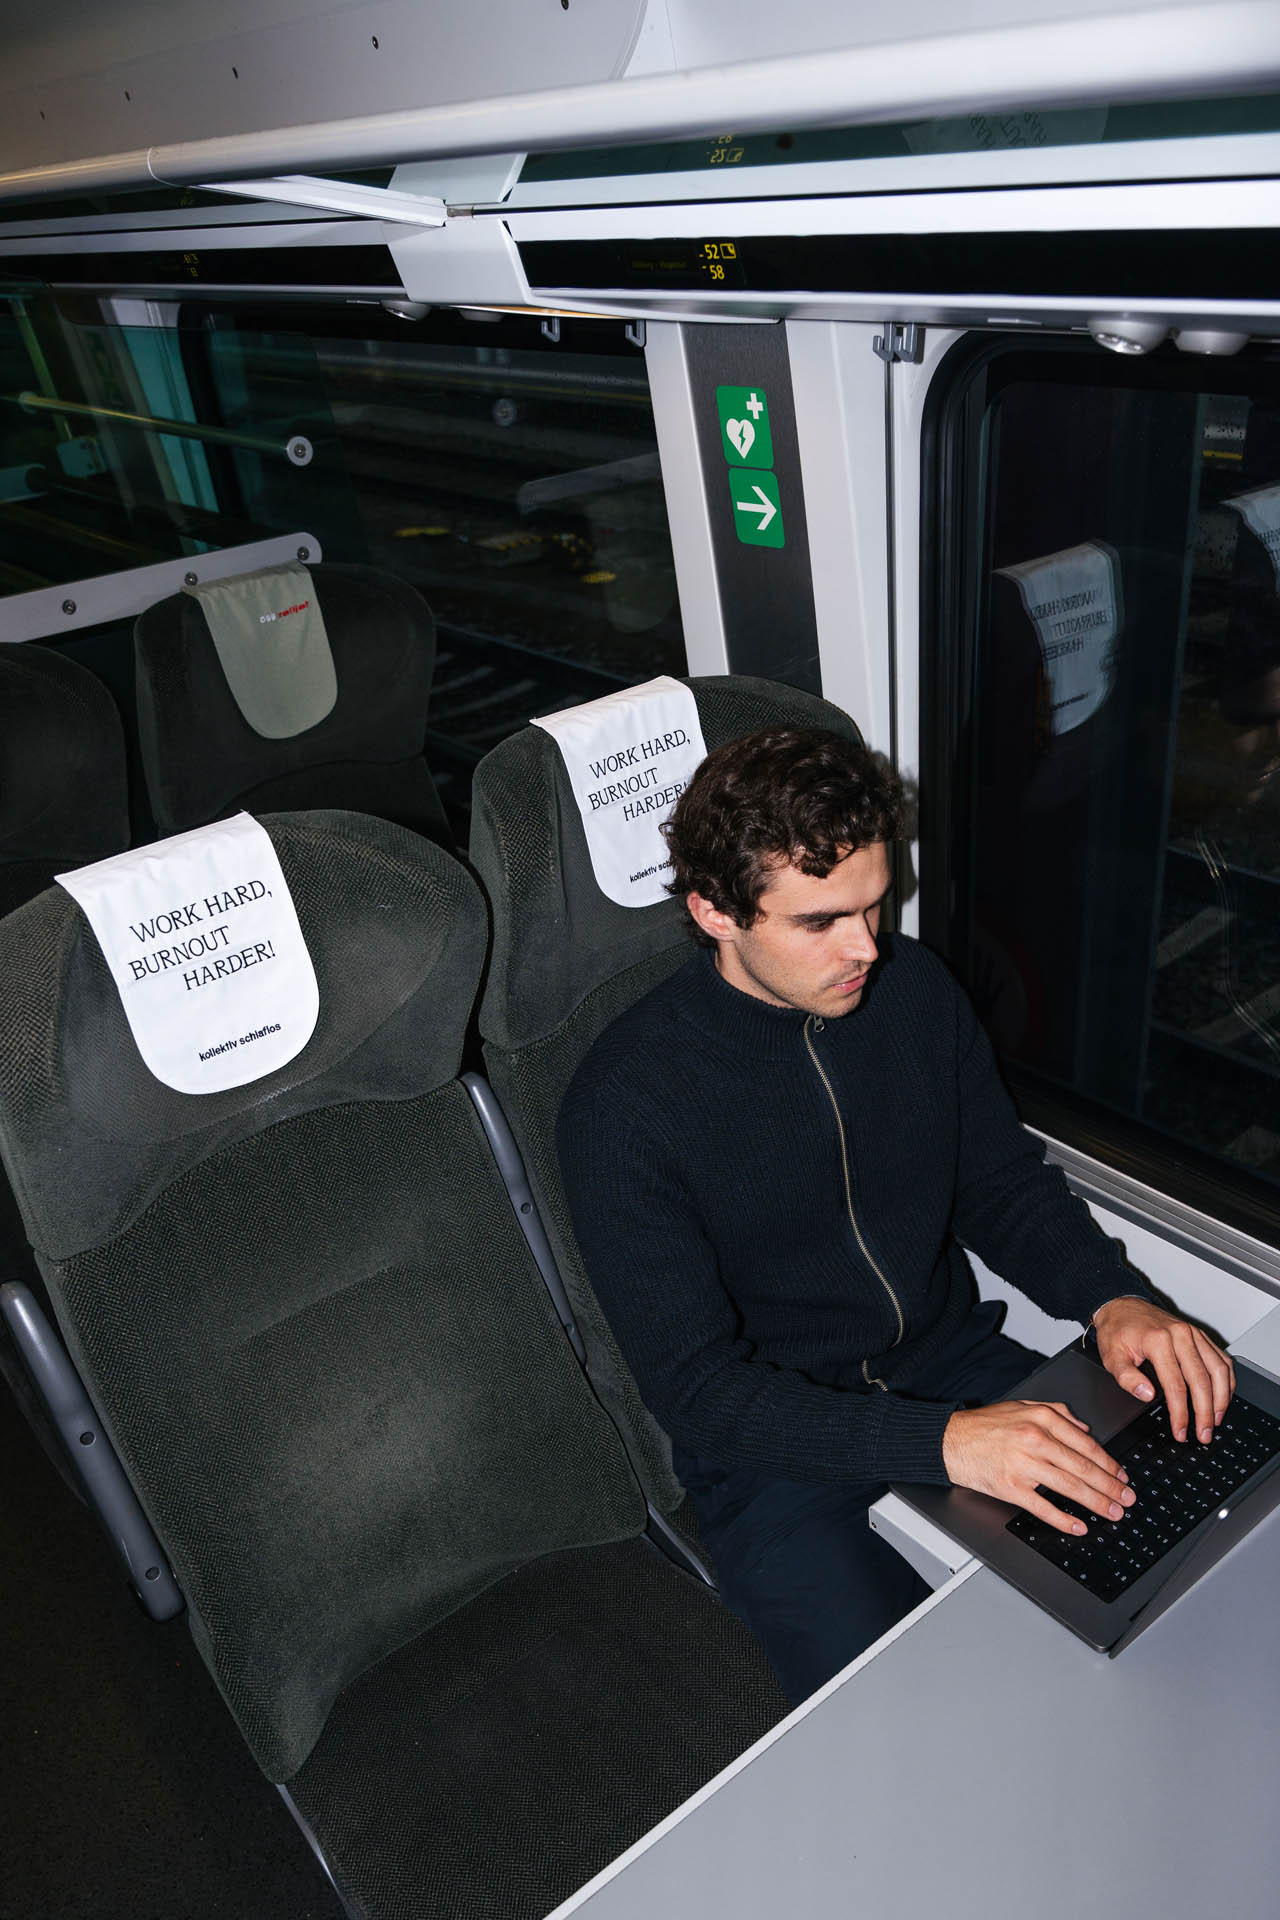 Sitzplatz mit Tisch in einem Railjet. Person sitzt mit Laptop und arbeitet. Das Kopfteil des Sitzes zeigt die Aussage Work Hard, Burnout Harder